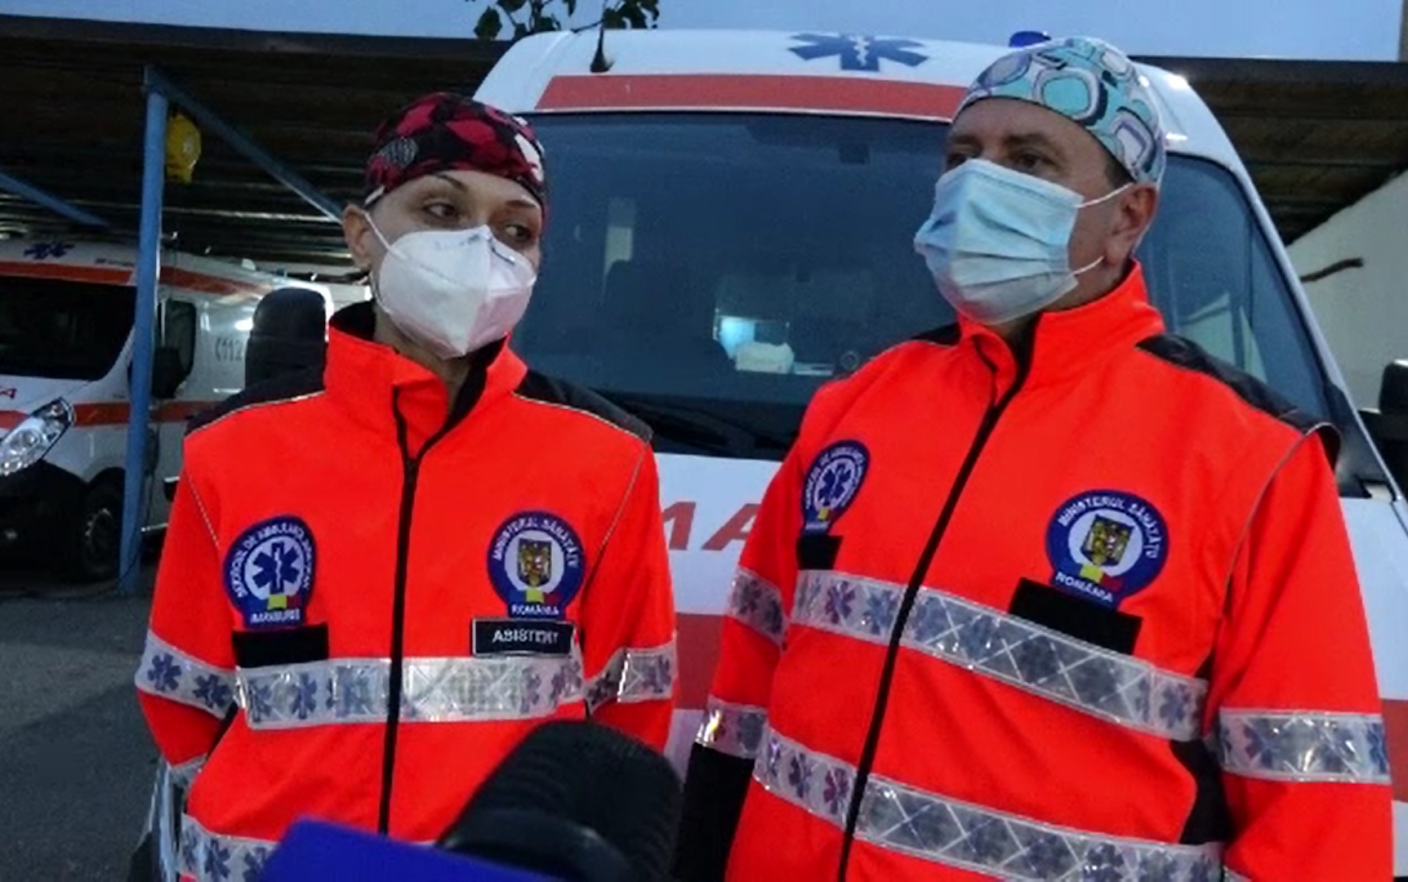 Echipament de ambulanță elvețiană anti îmbătrânire consilieri anti-imbatranire